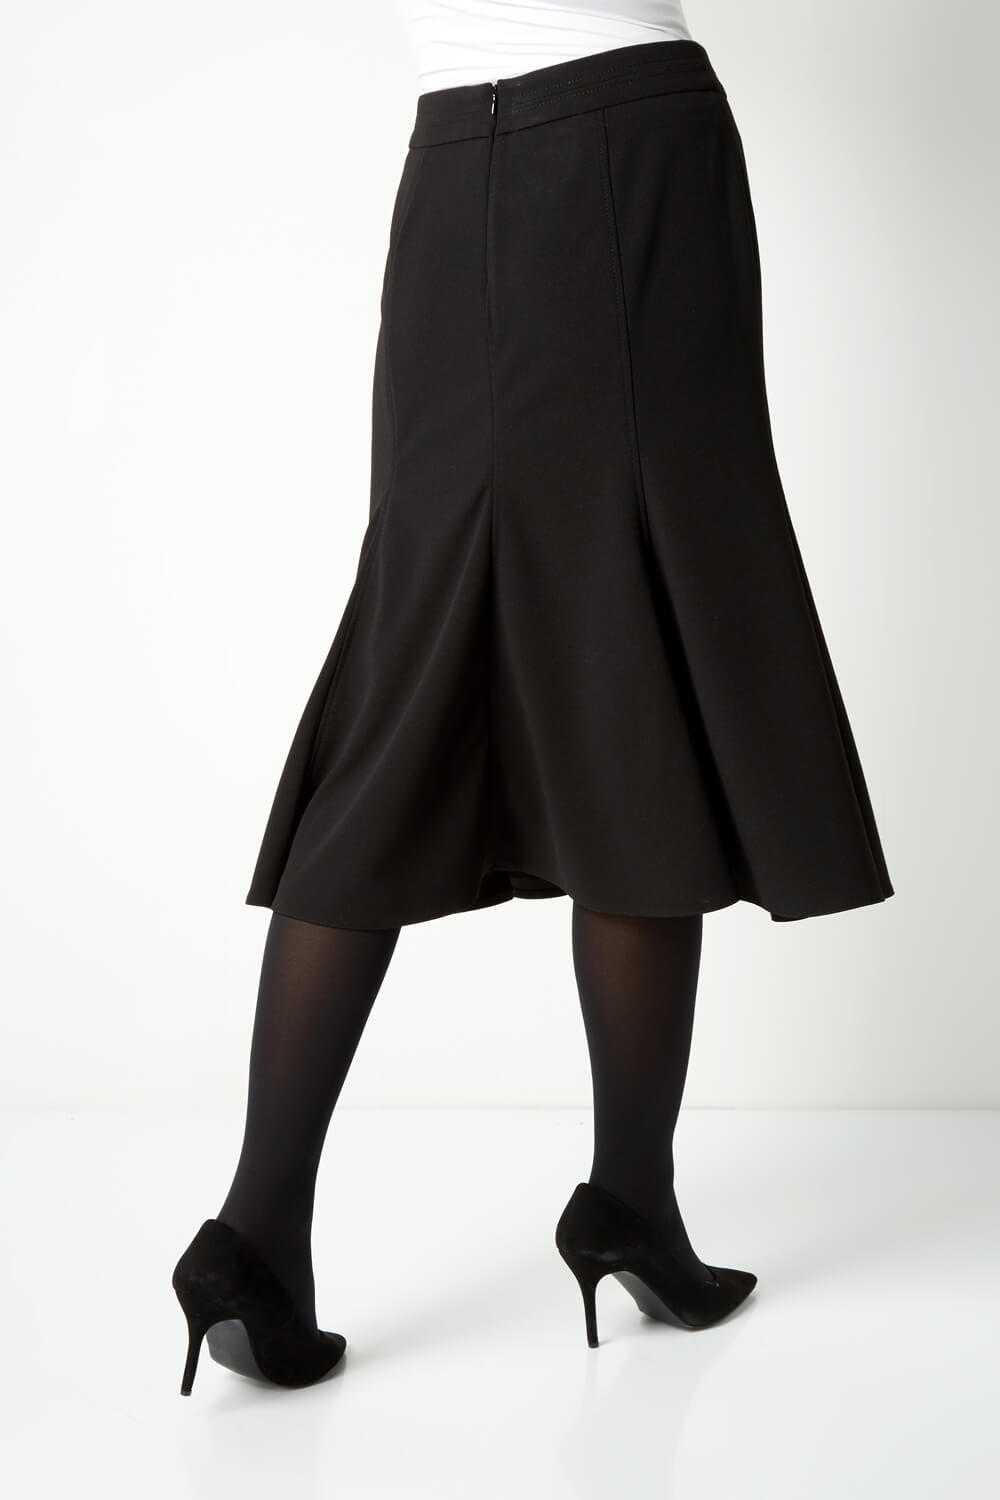 Black Flute Midi Skirt, Image 2 of 4